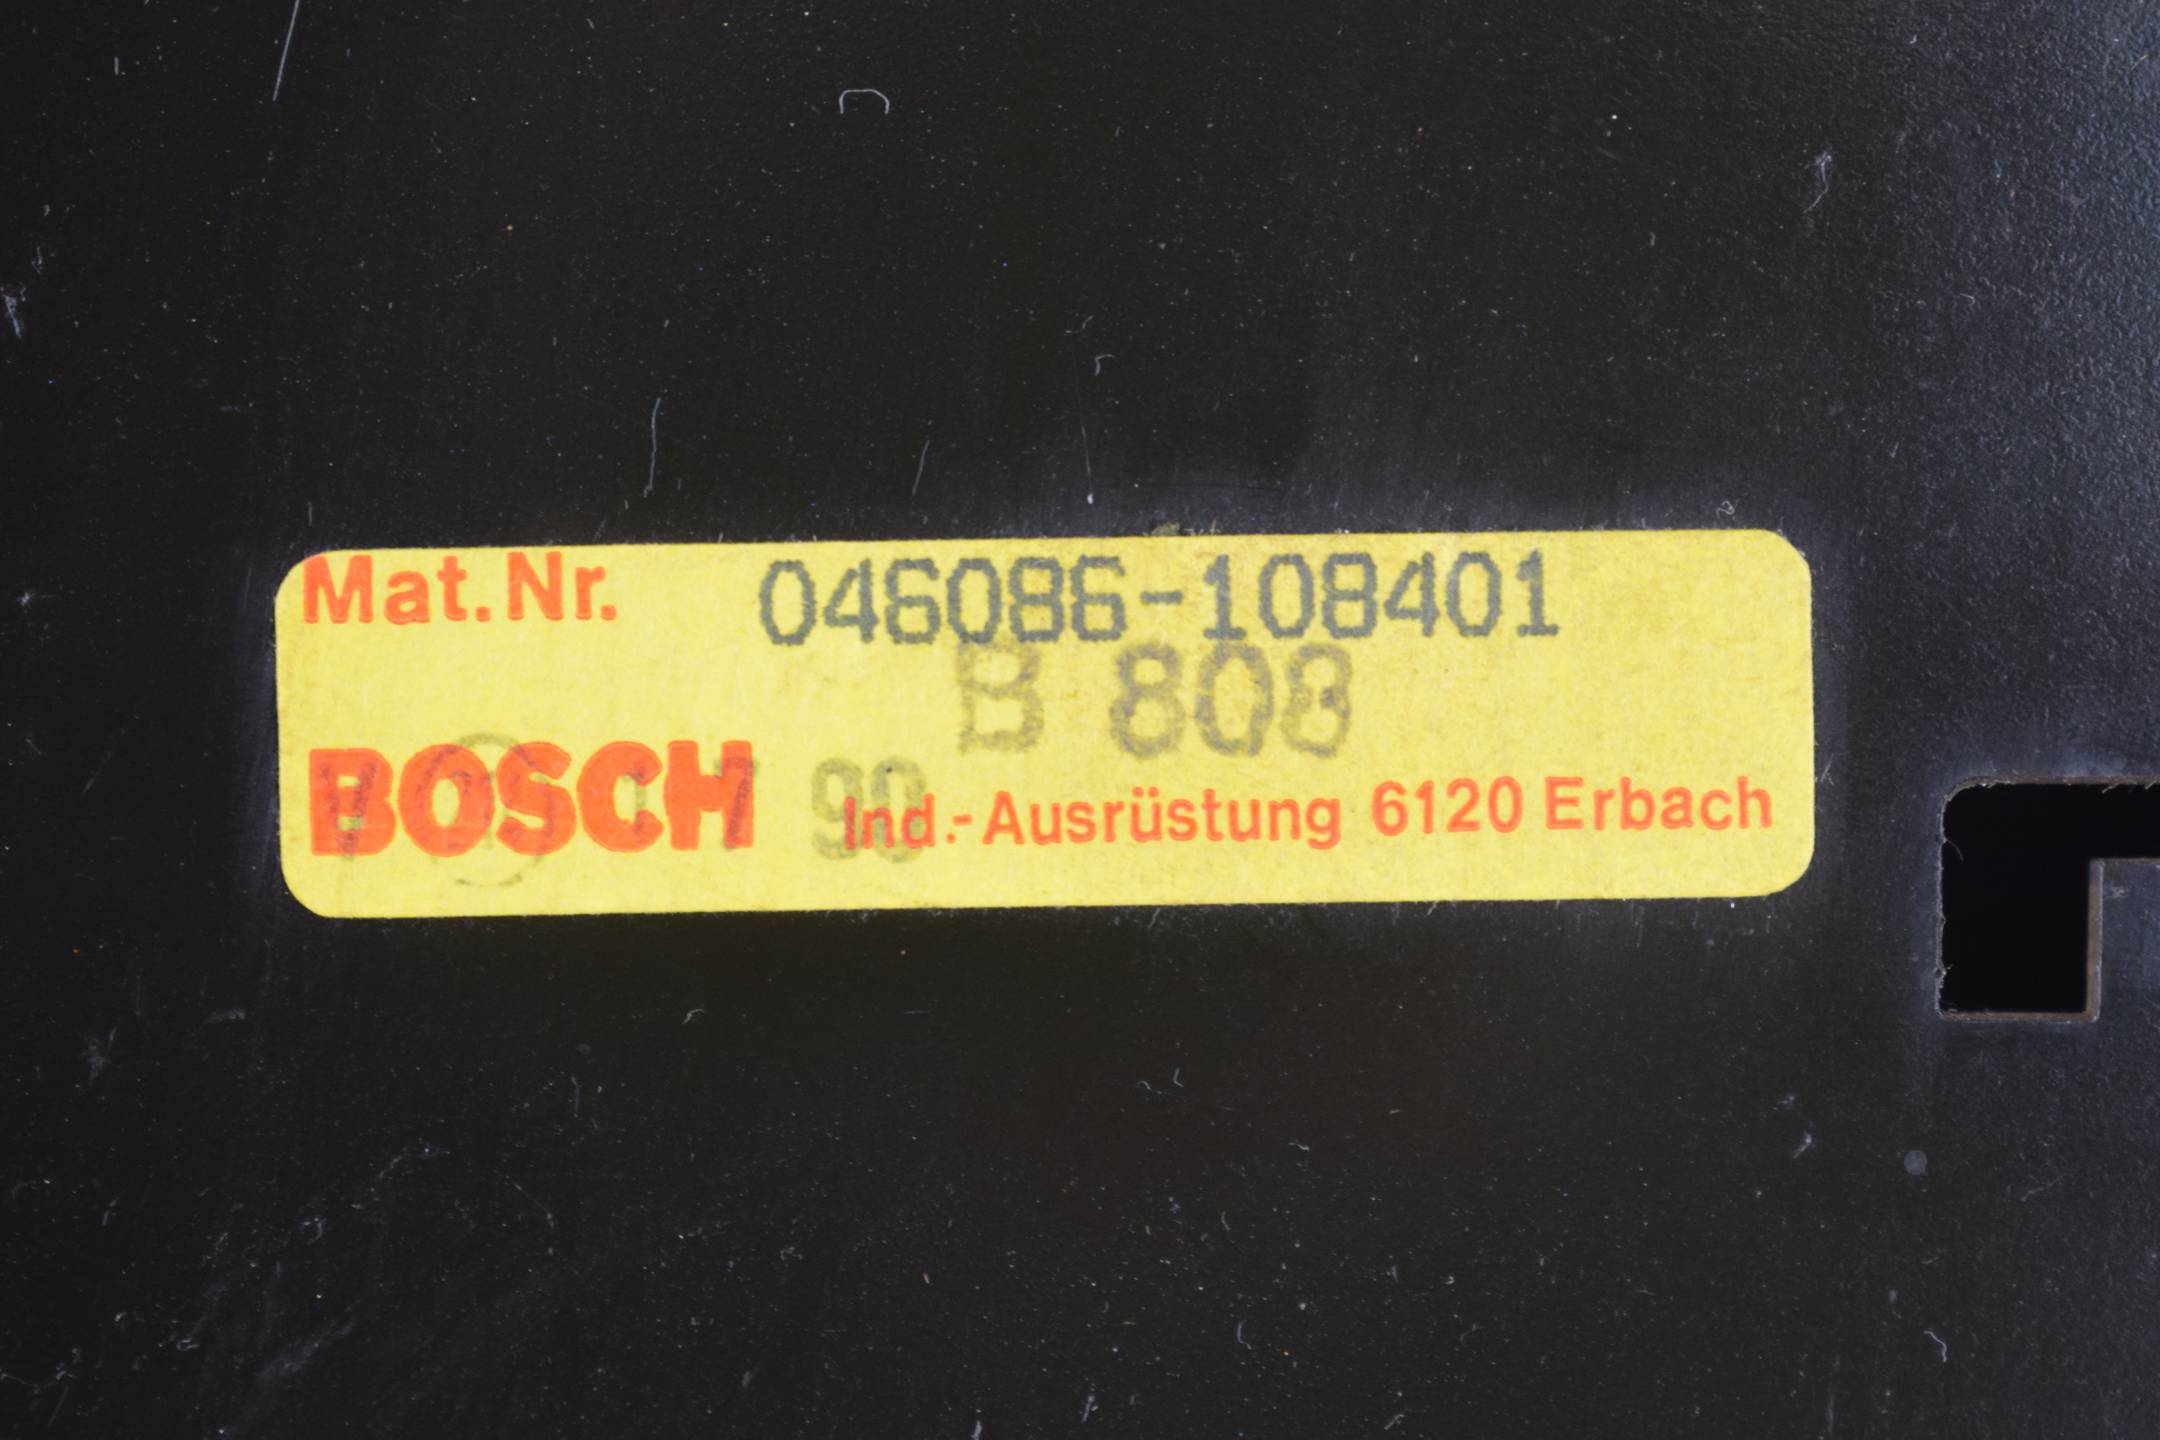 Bosch CC 300M Rack 065412-102  ( 044331-106401 )